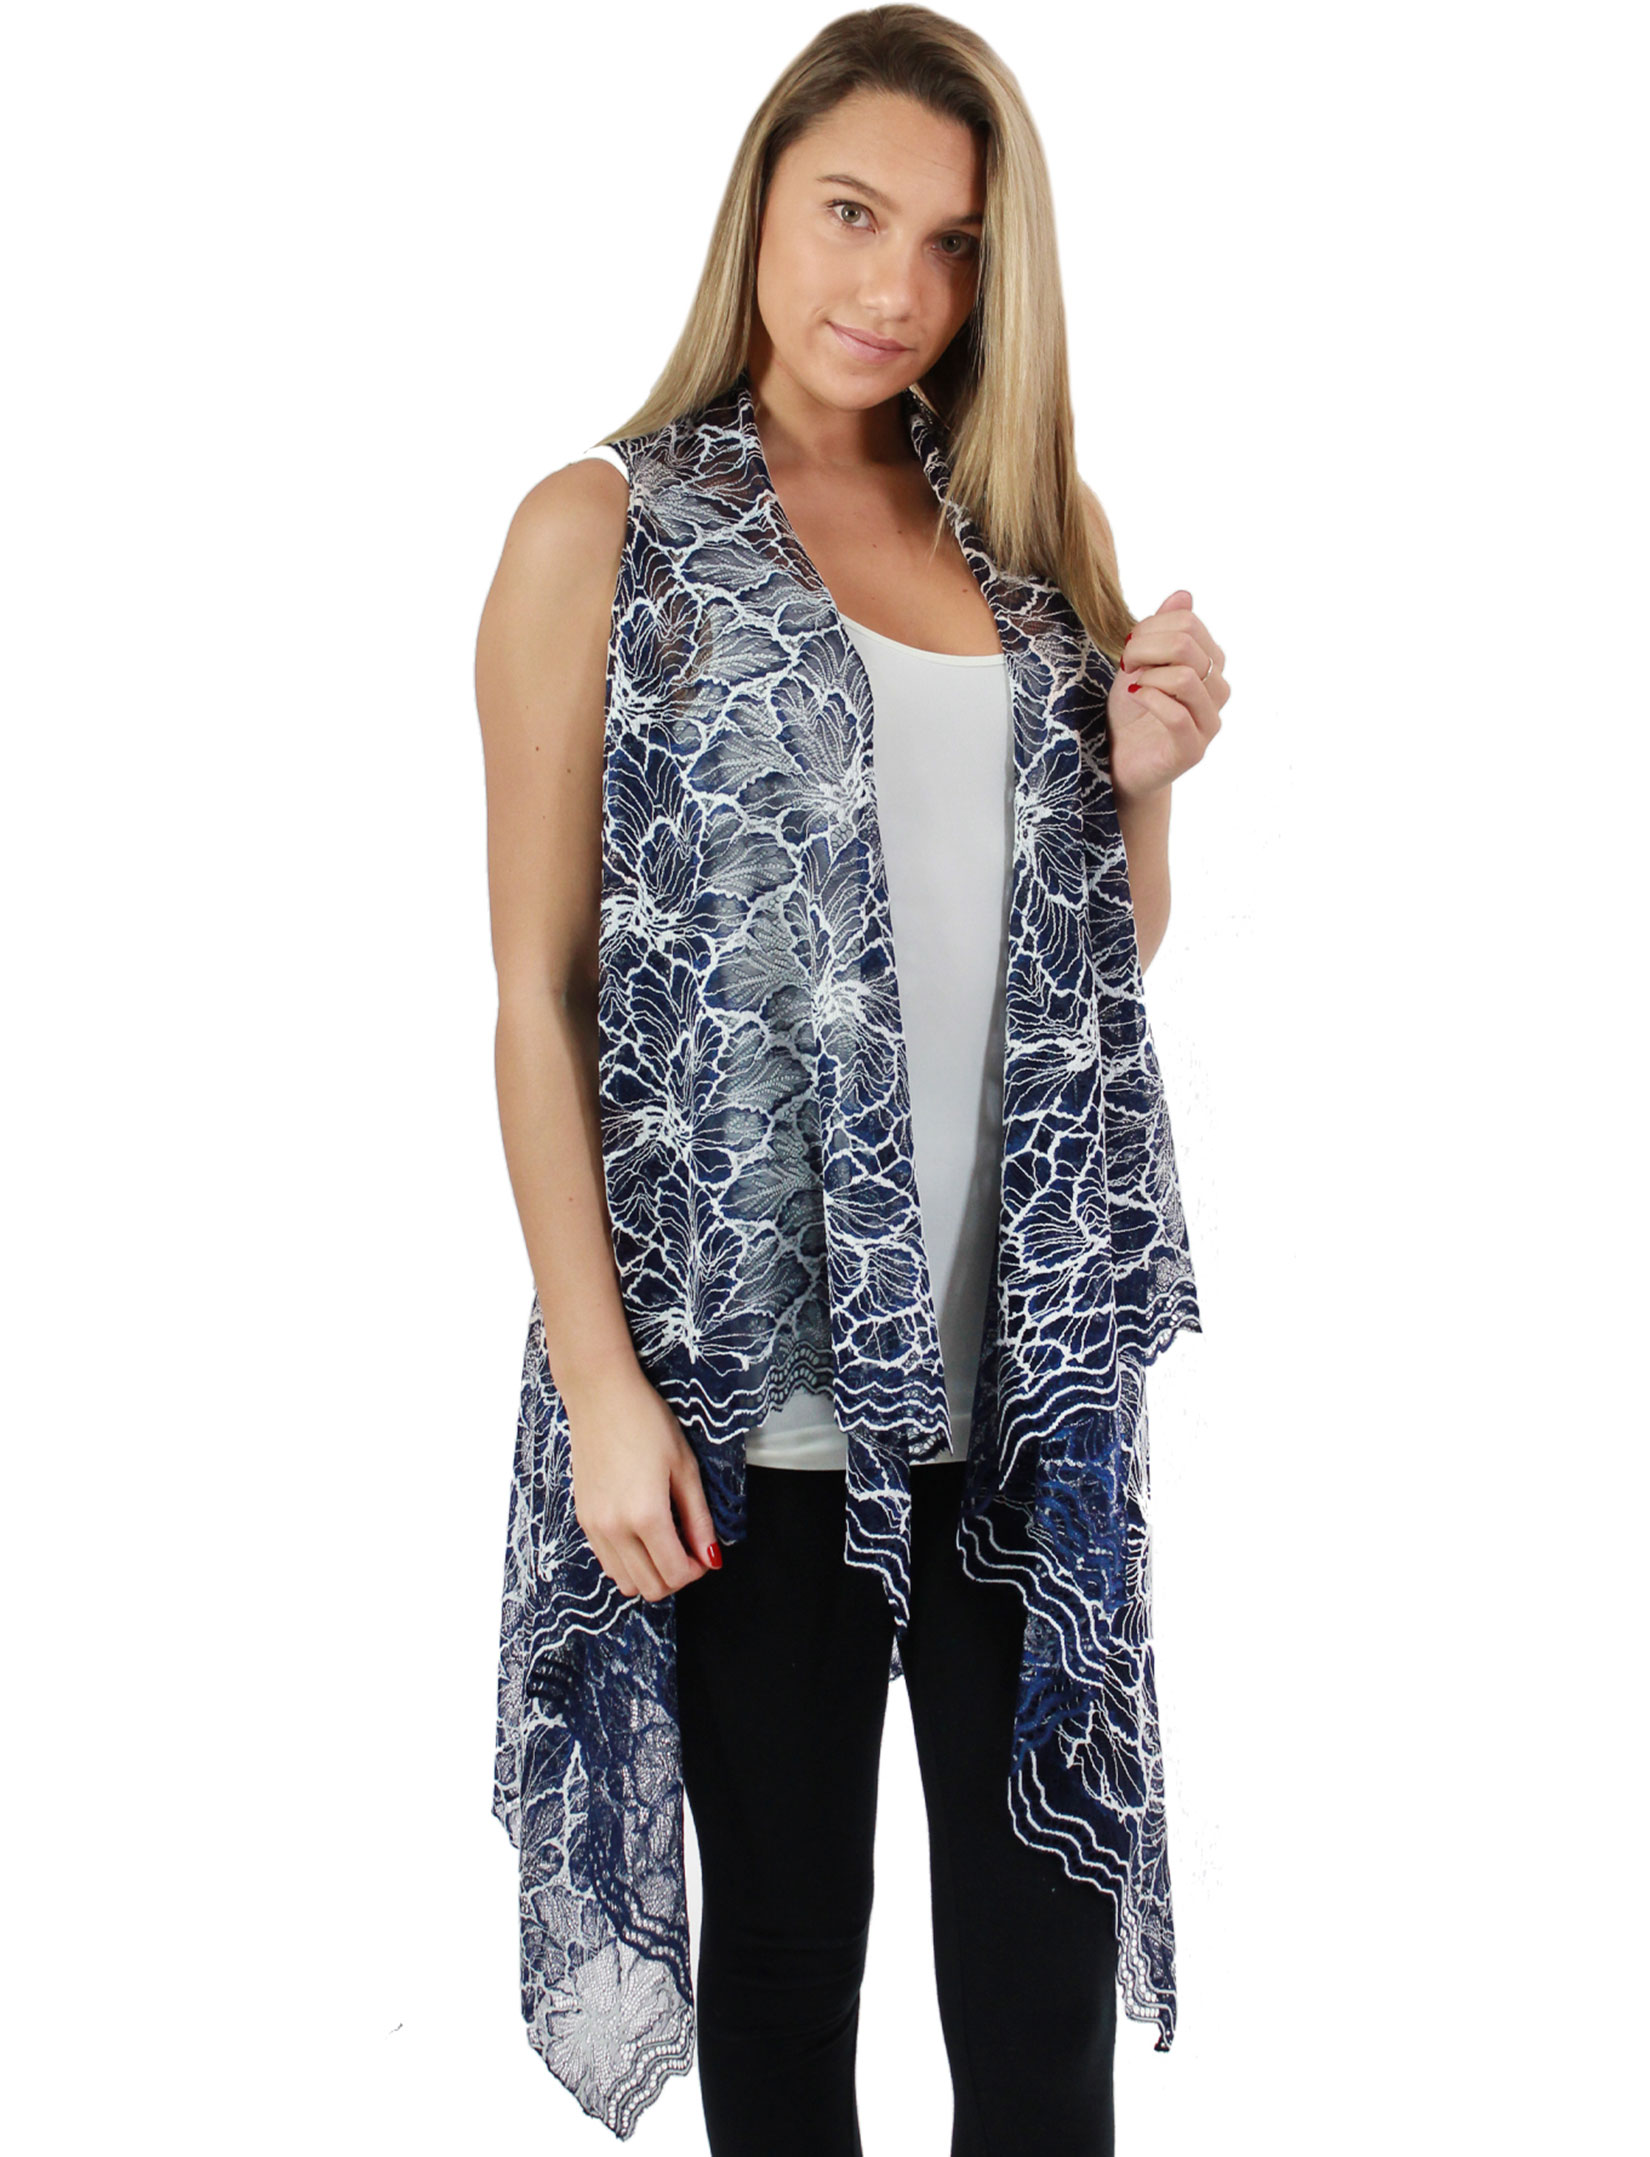 Wholesale9101 - Lace Two Tone Vests